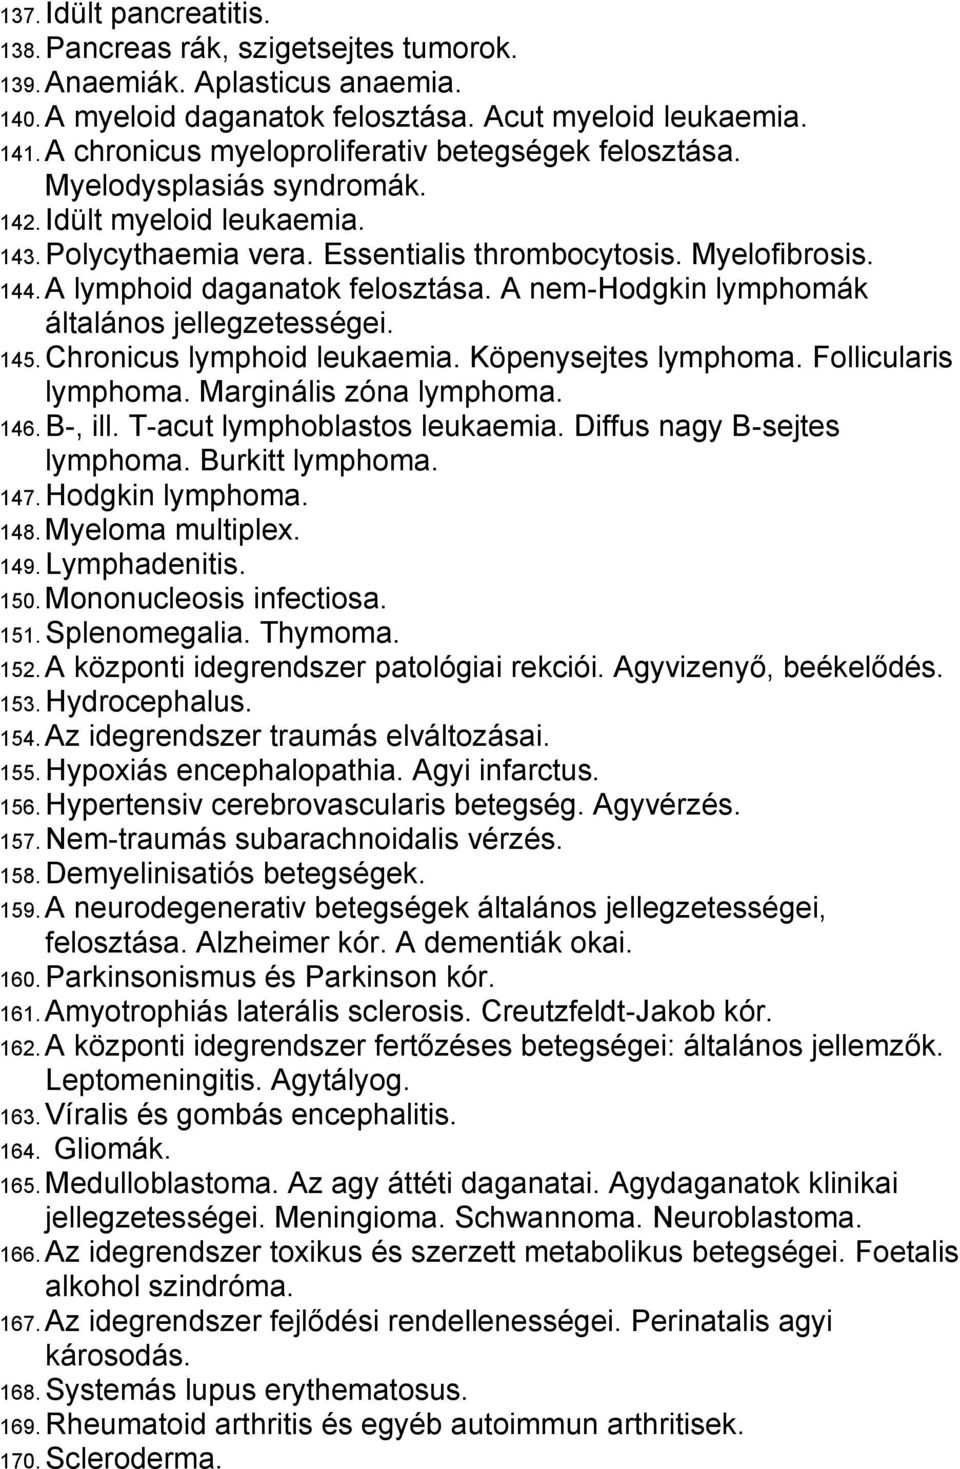 A lymphoid daganatok felosztása. A nem-hodgkin lymphomák általános jellegzetességei. 145. Chronicus lymphoid leukaemia. Köpenysejtes lymphoma. Follicularis lymphoma. Marginális zóna lymphoma. 146.